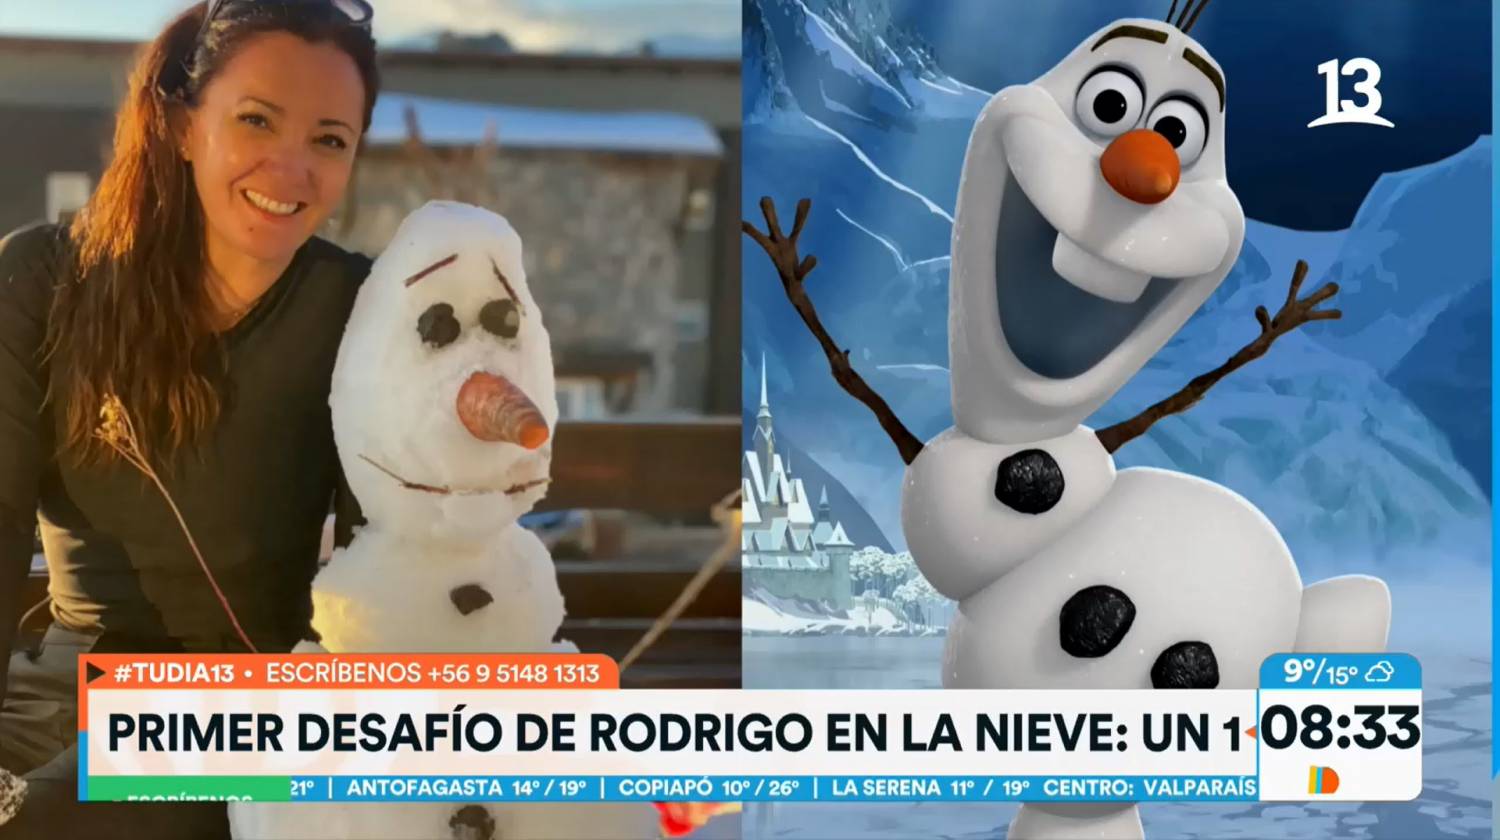 Fue tanto el furor...”: Priscilla Vargas presumió de muñeco de nieve idéntico a Olaf